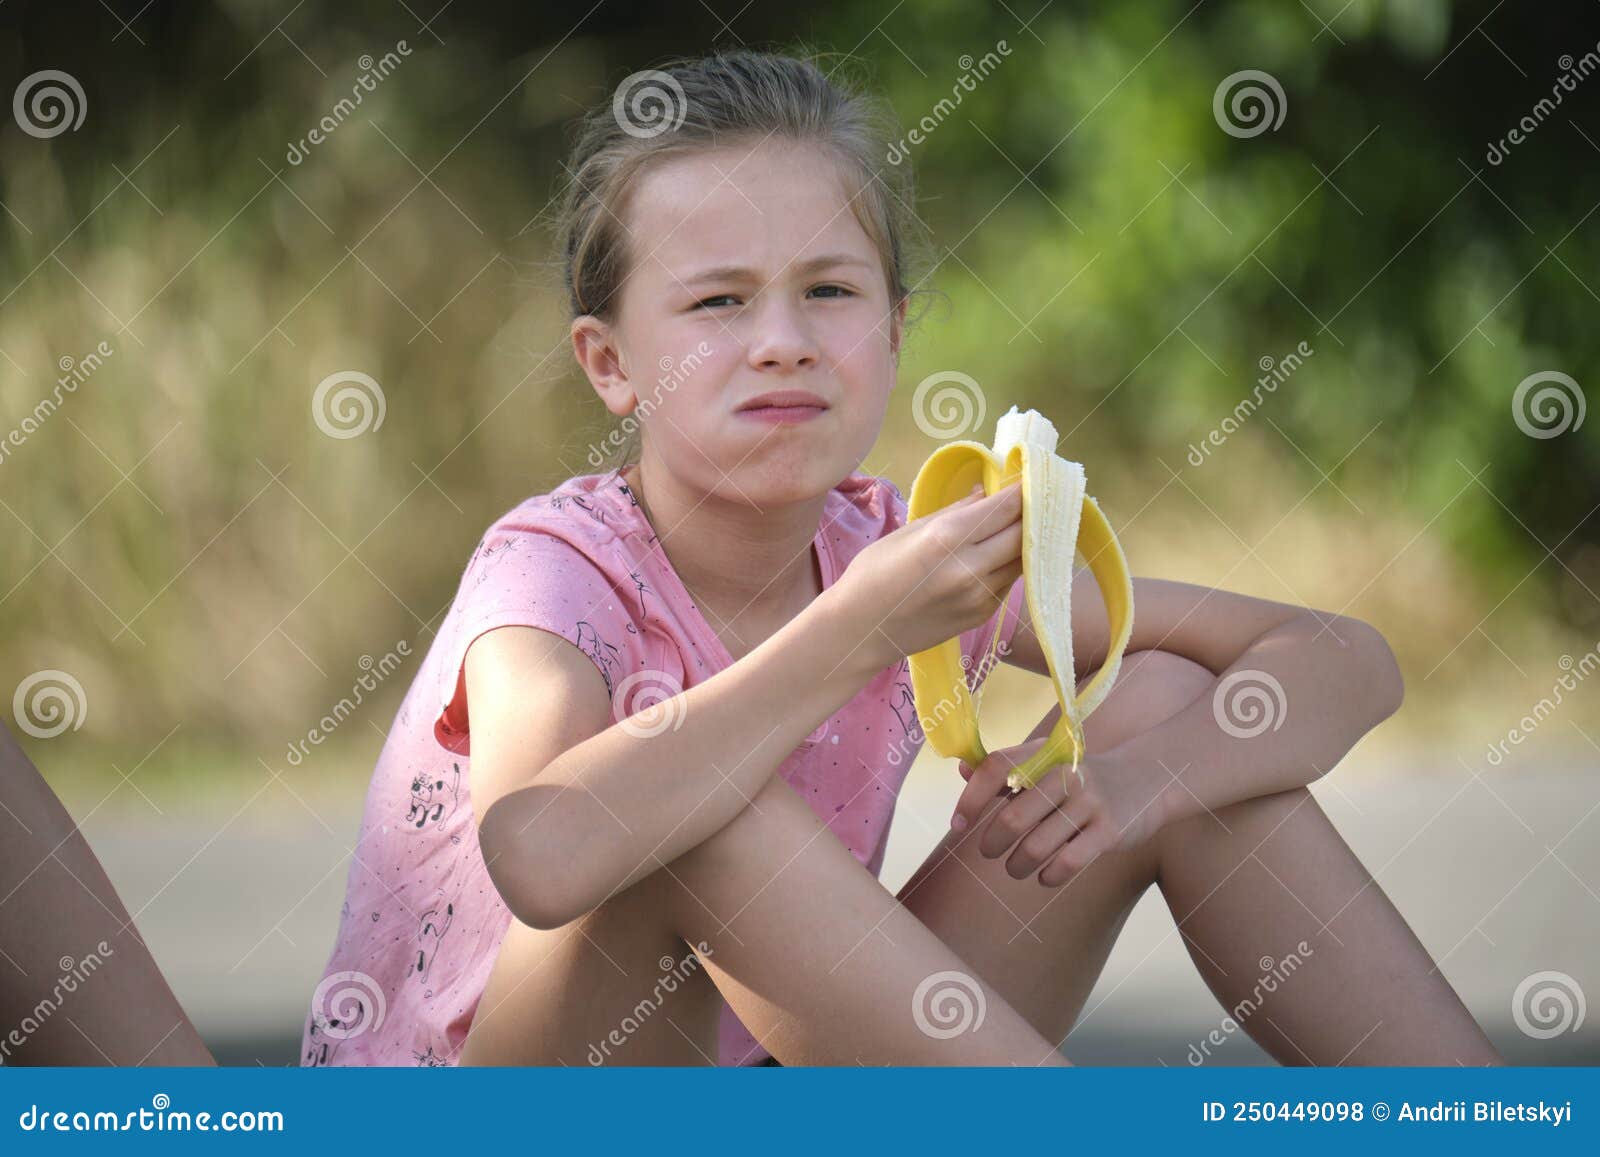 吃女孩年轻人的香蕉 库存照片. 图片 包括有 女孩, 愉快, 查出, 孩子, 颜色, 节食, 营养素, 白种人 - 13770564